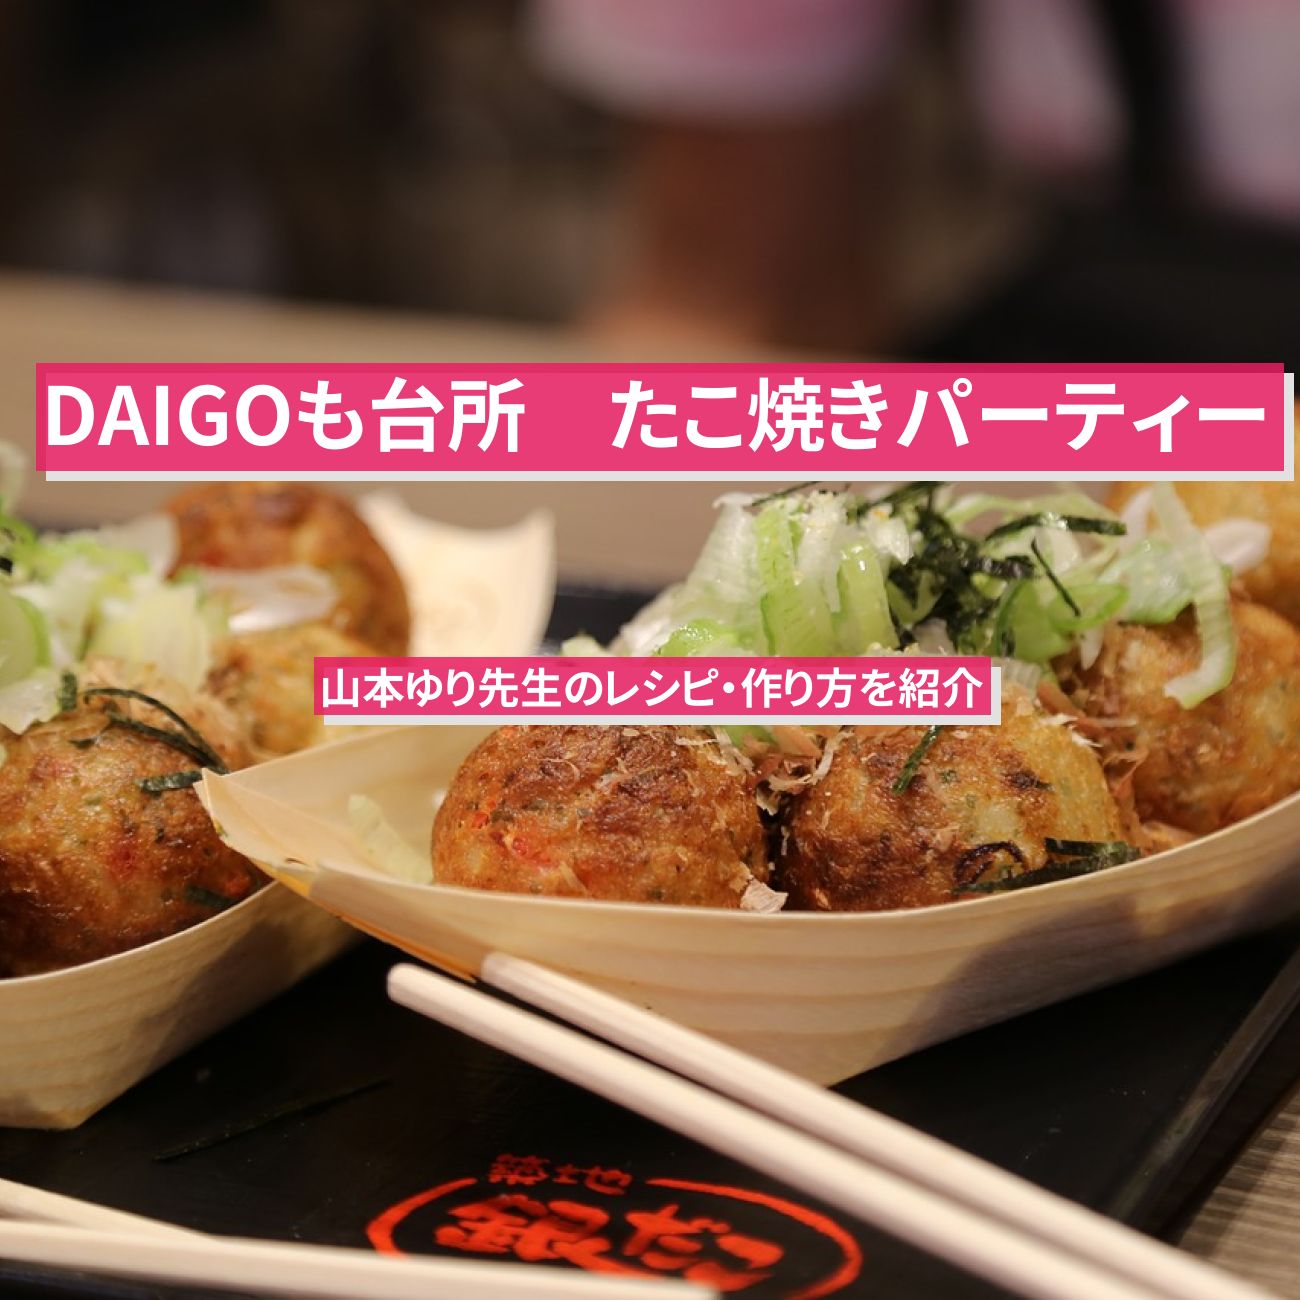 【DAIGOも台所】『たこ焼きパーティー』山本ゆり先生のレシピ・作り方を紹介〔ダイゴも台所〕